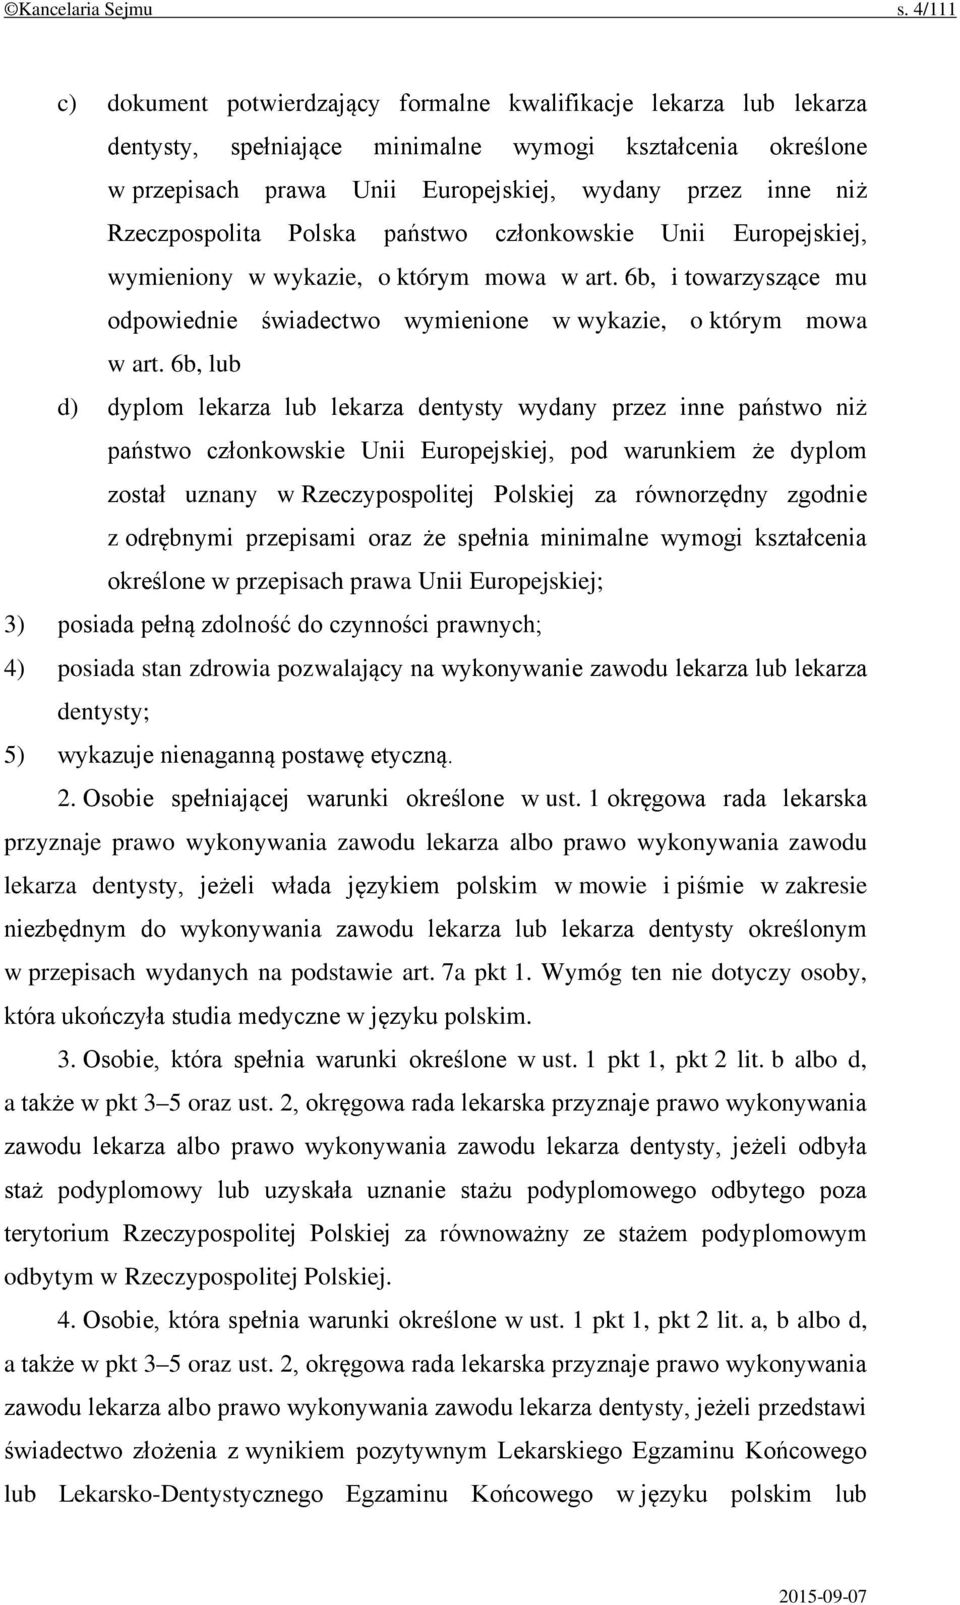 Rzeczpospolita Polska państwo członkowskie Unii Europejskiej, wymieniony w wykazie, o którym mowa w art. 6b, i towarzyszące mu odpowiednie świadectwo wymienione w wykazie, o którym mowa w art.